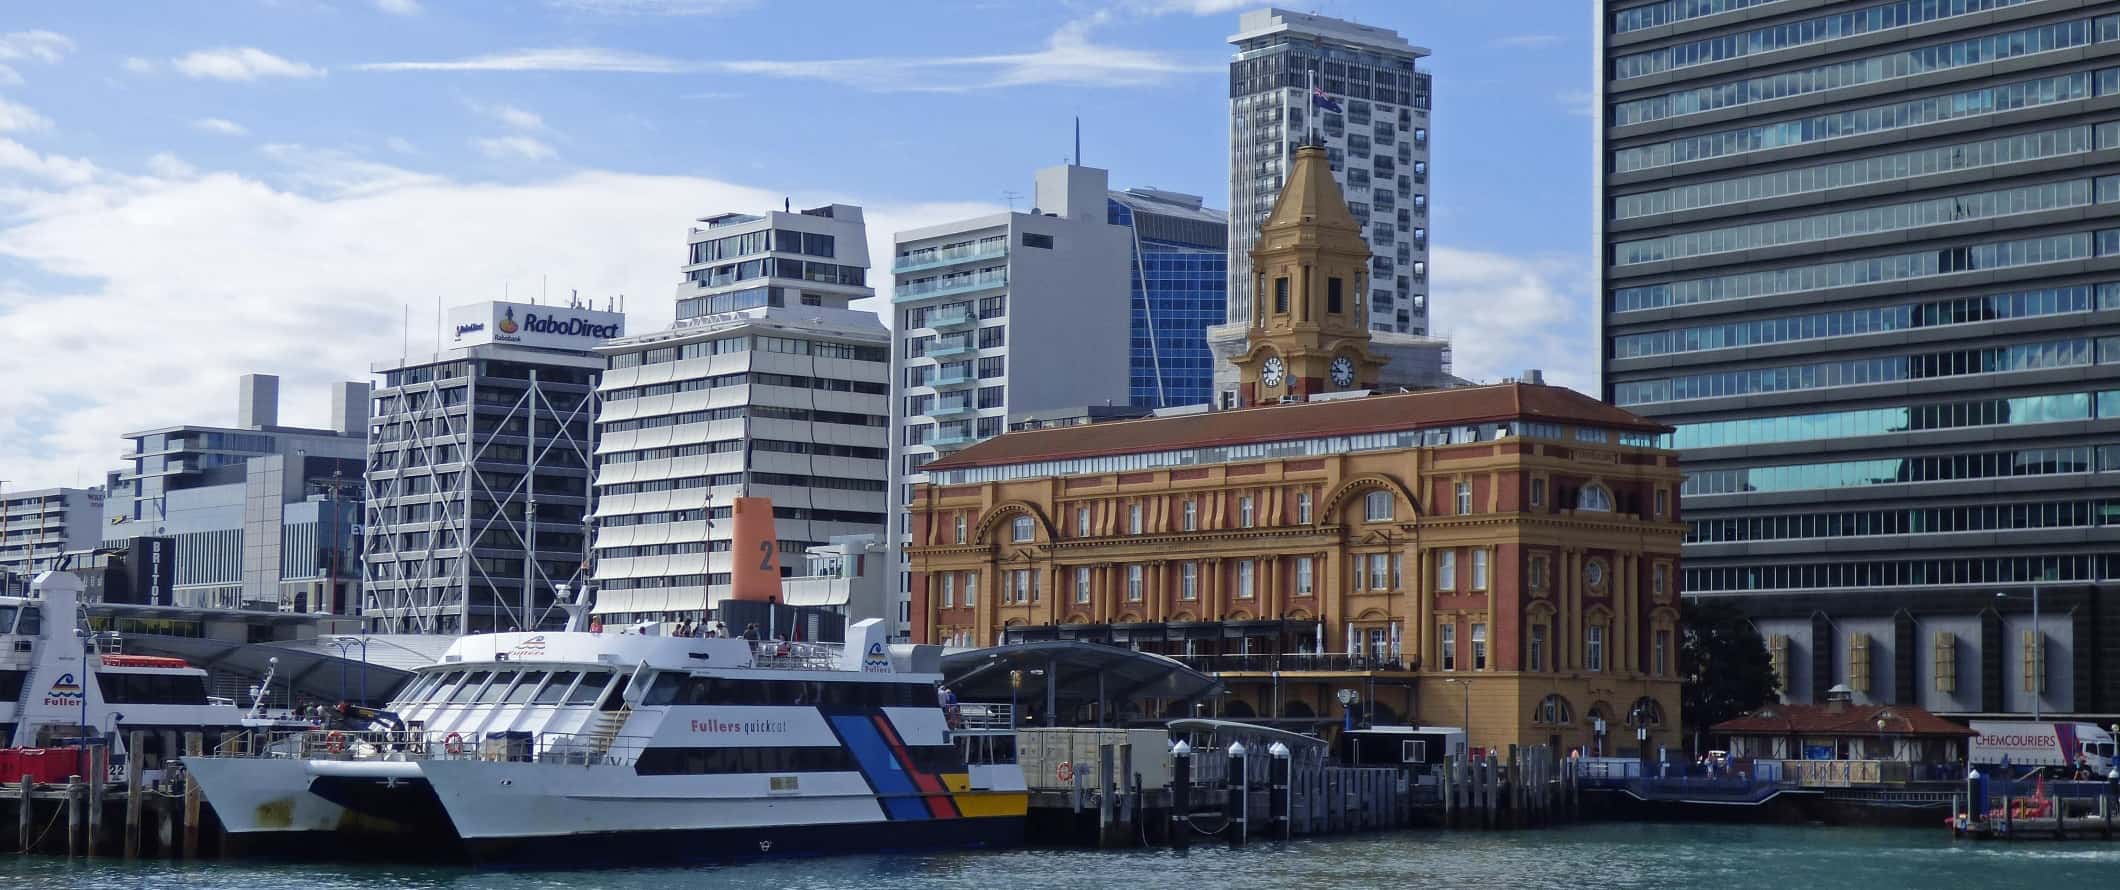 Orla marítima do porto com balsa, edifício histórico e arranha-céus altos ao fundo em Auckland, Nova Zelândia.